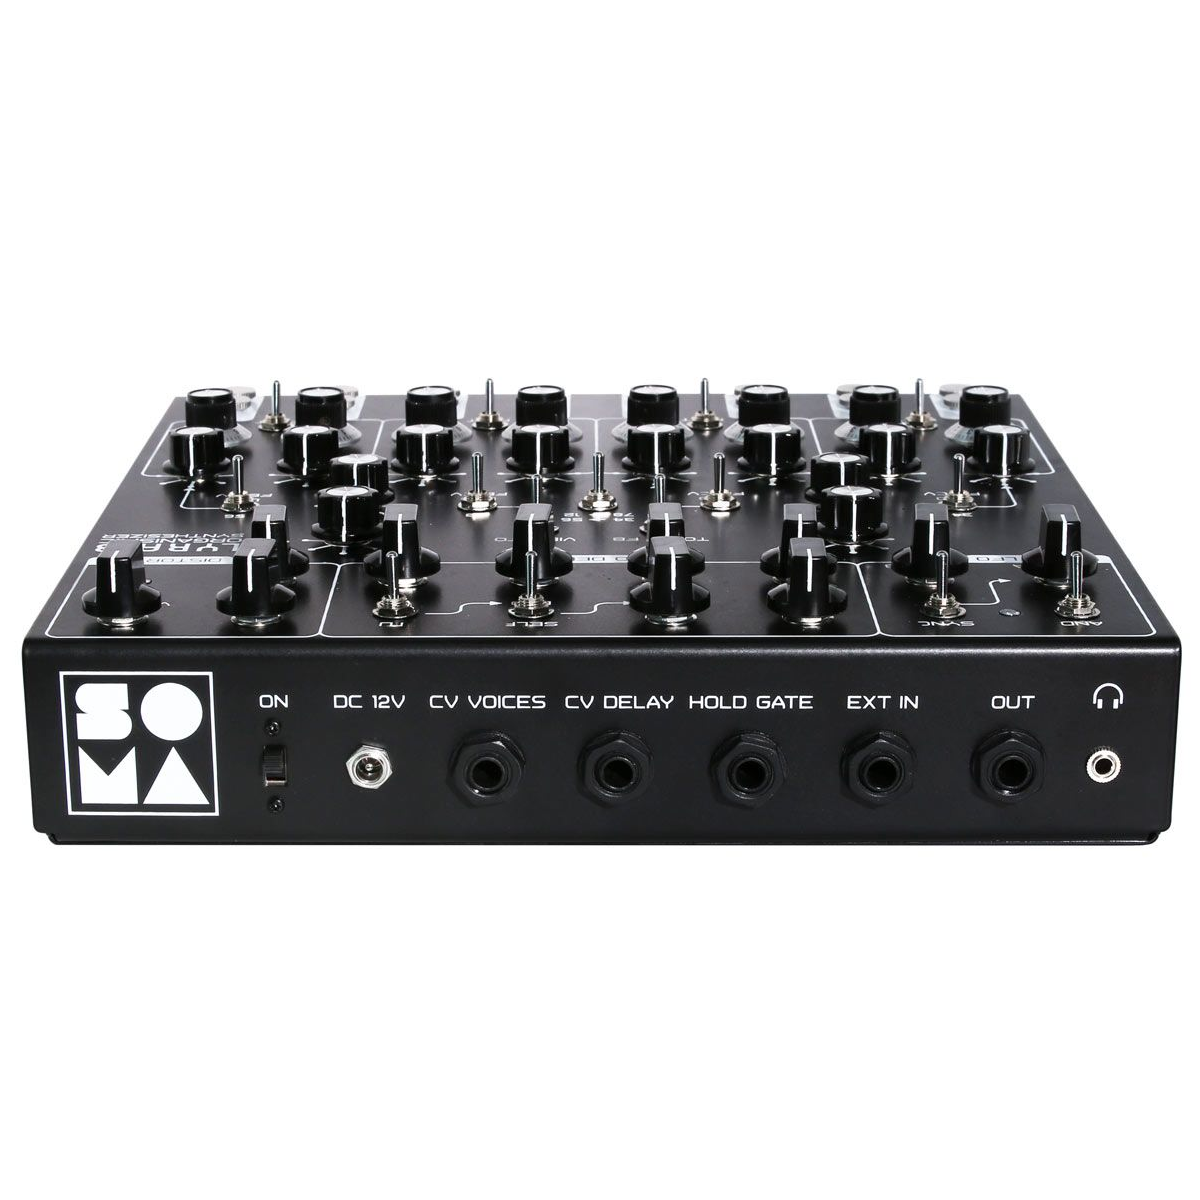 SOMA LYRA-8 Black Клавишные аналоговые синтезаторы